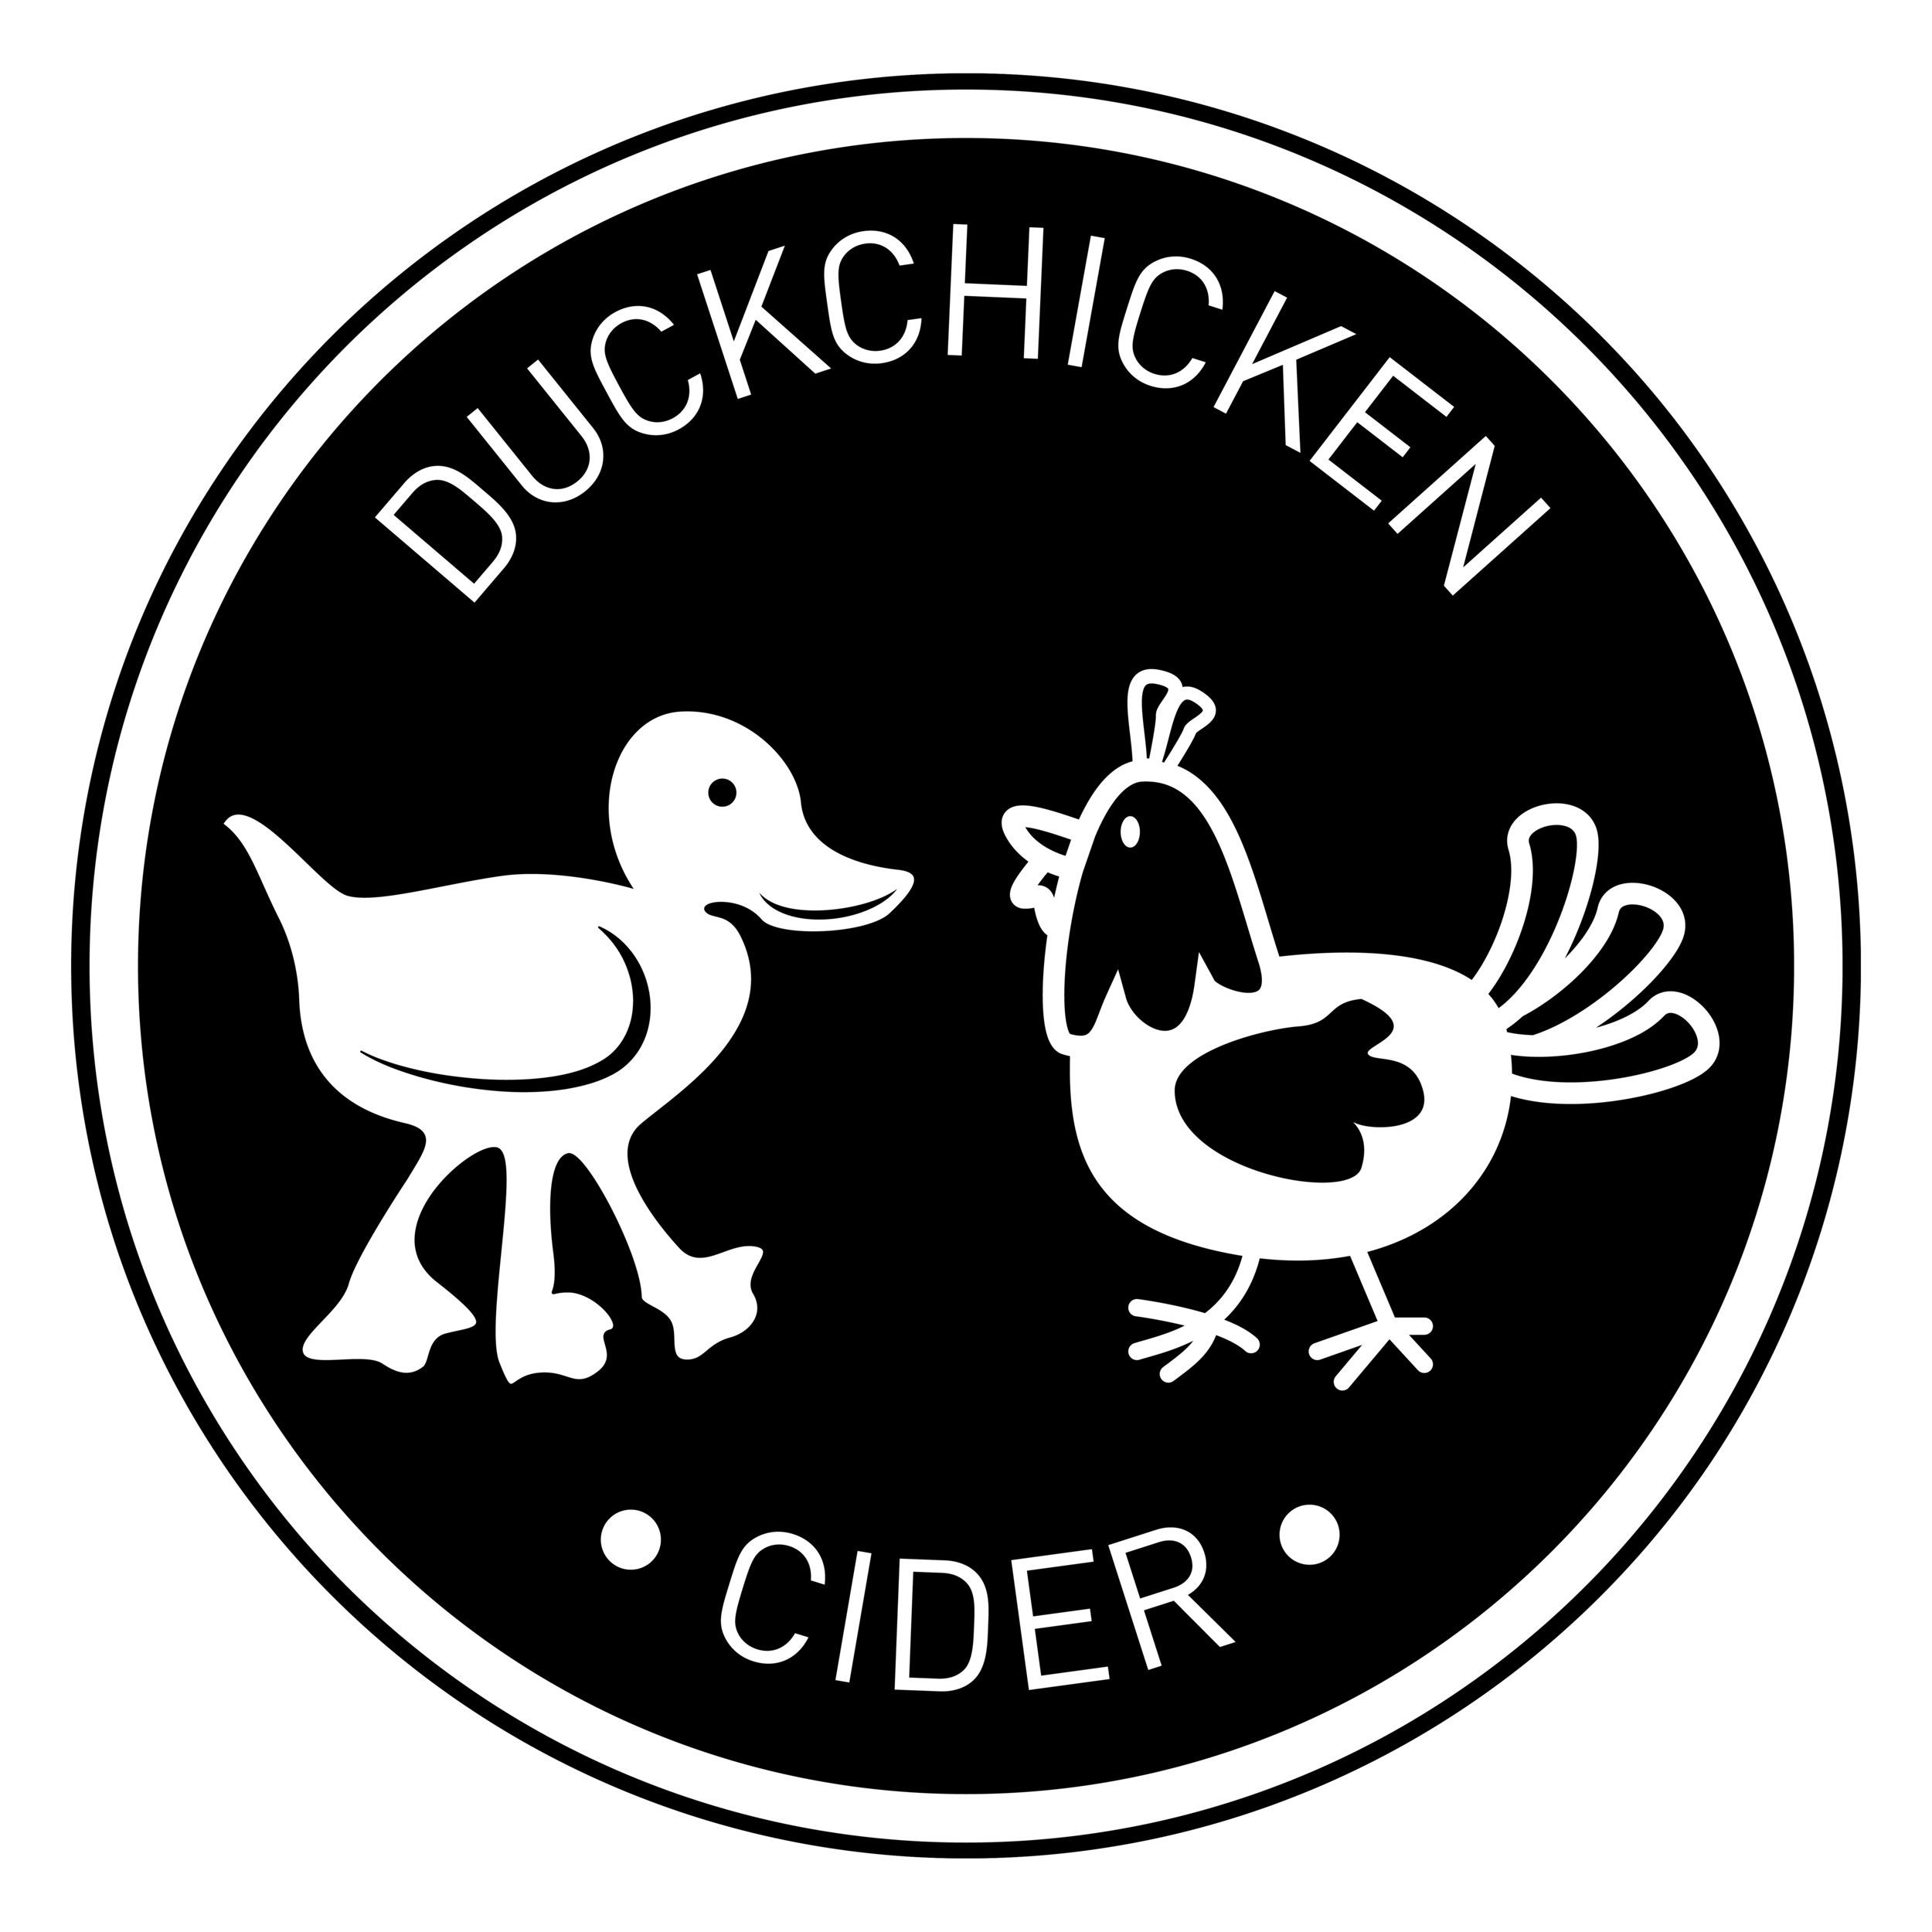 Duckchicken Cider